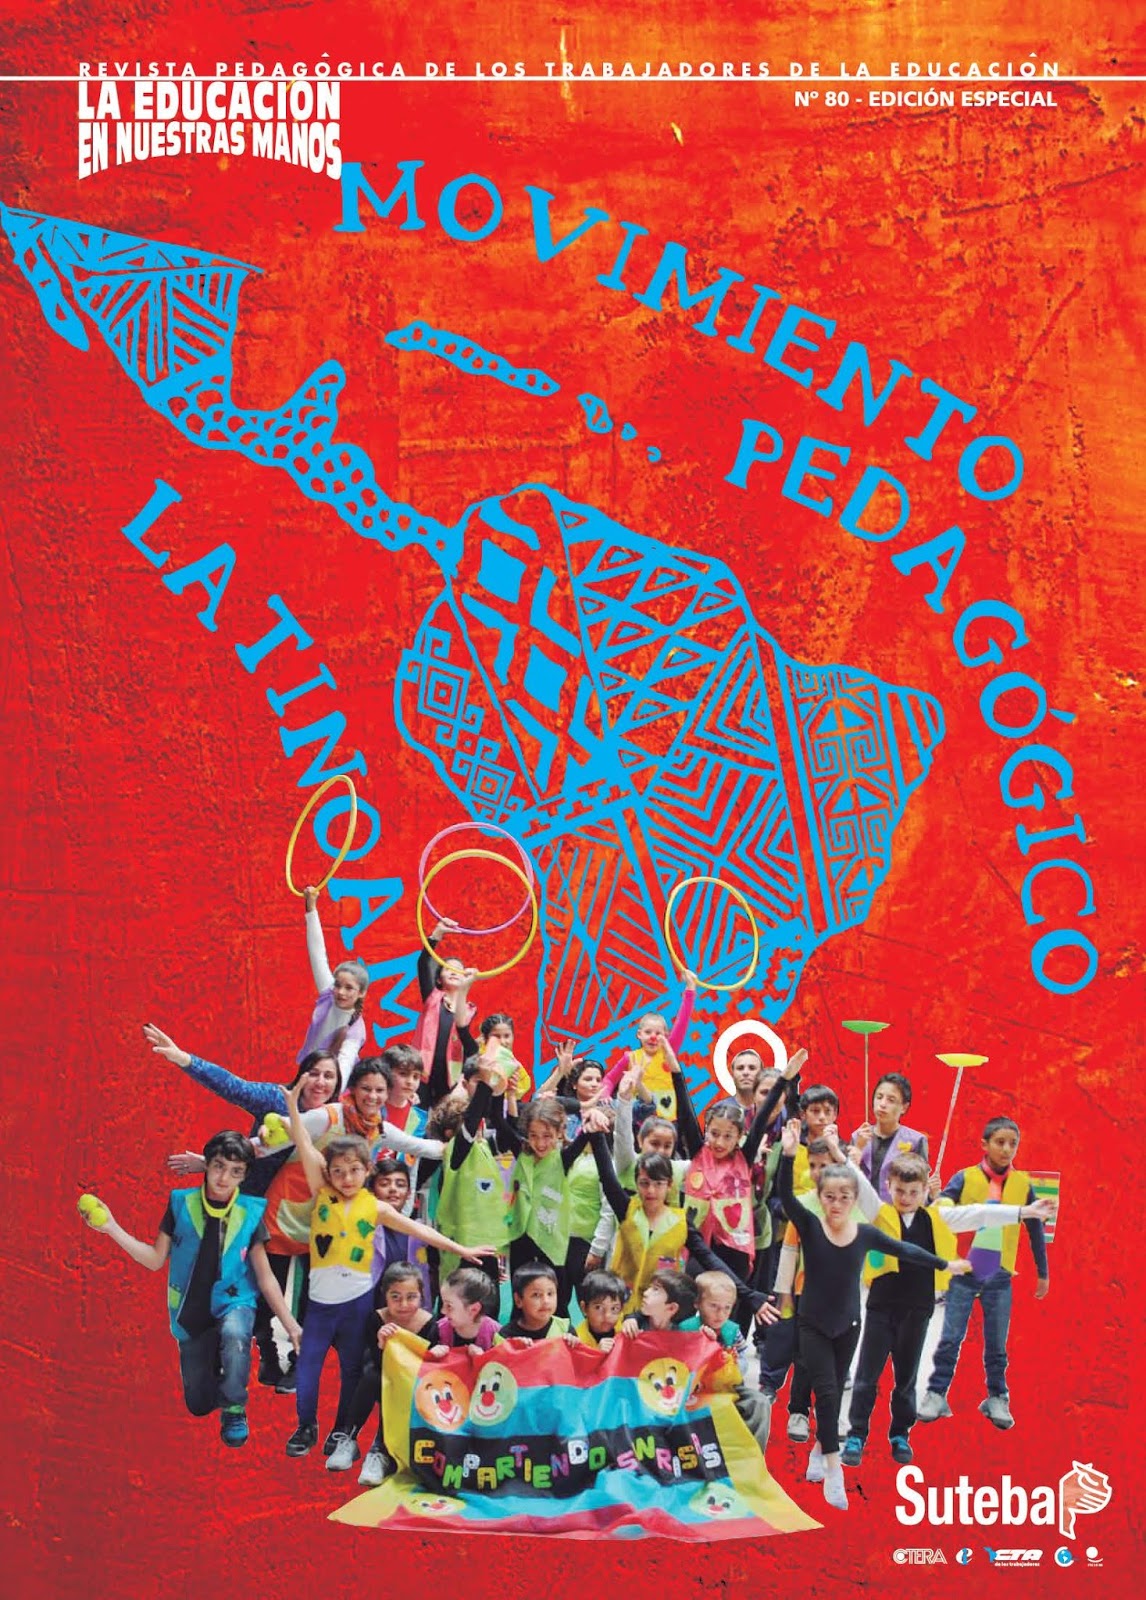 Movimiento Pedagógico Latinoamericano y Revista "La Educación en nuestras manos"